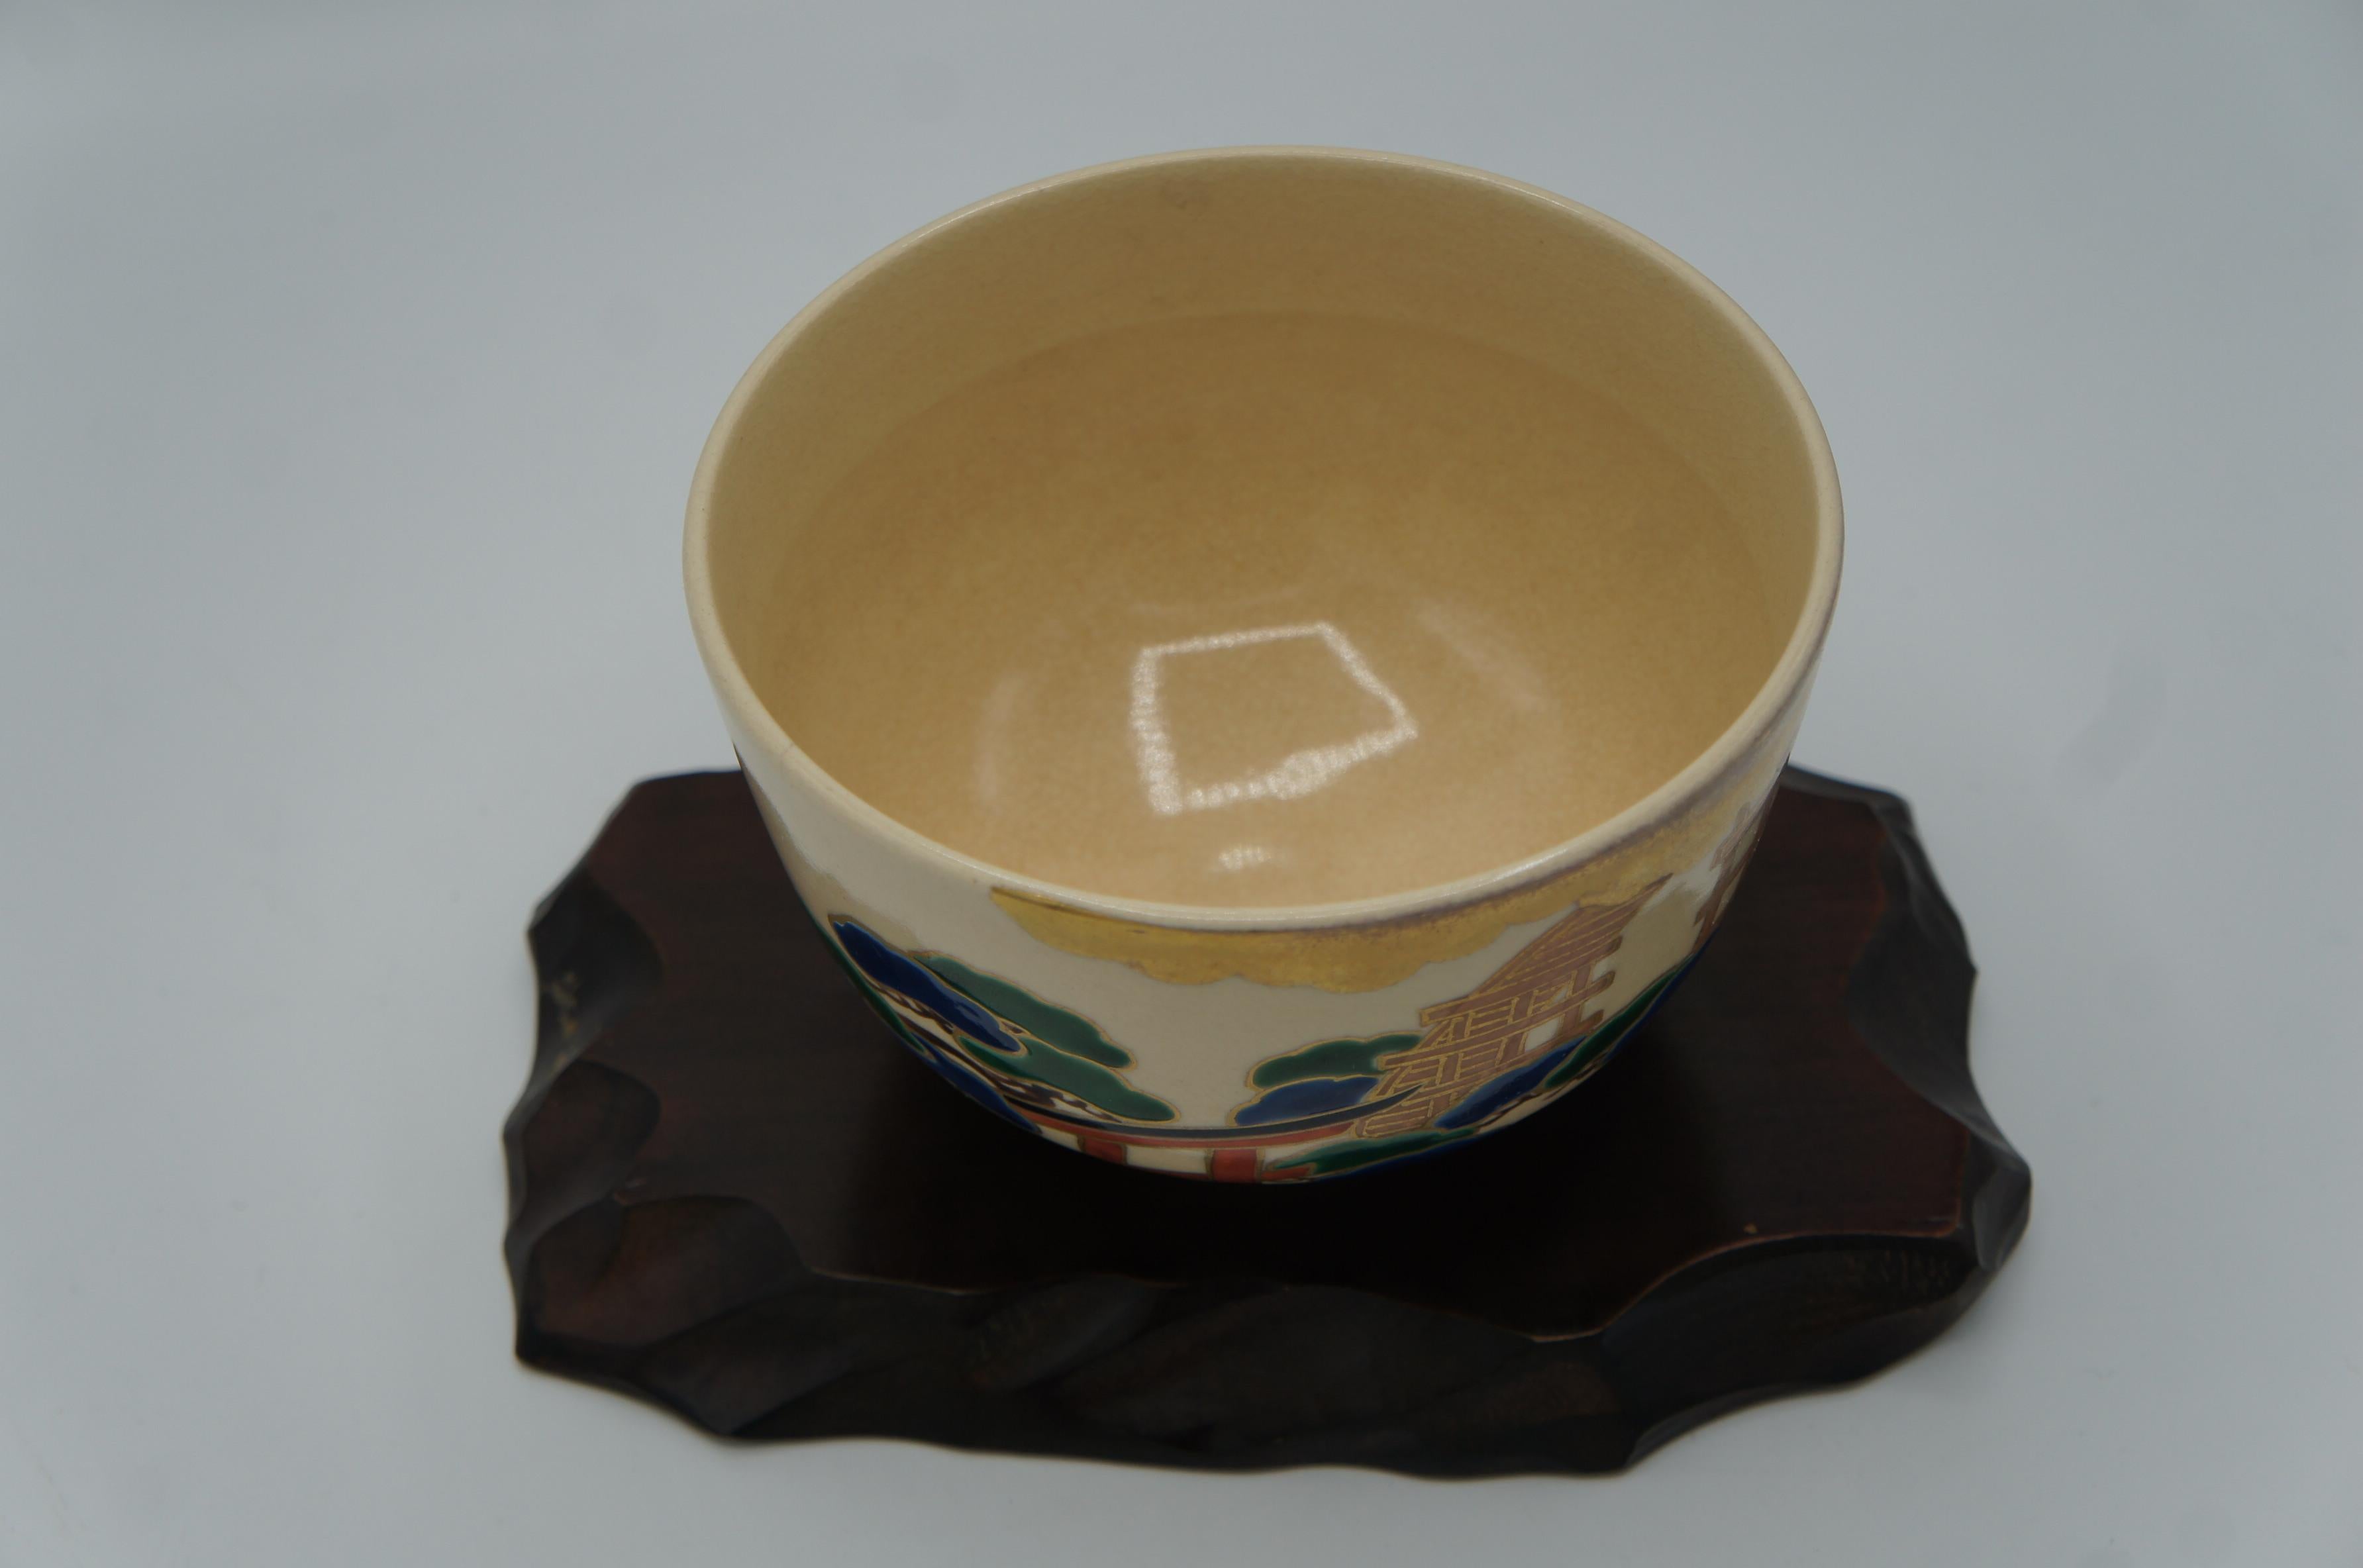 Dies ist eine Matcha-Schale für die Teezeremonie.
Sie wurde in der Präfektur Kyoto, Japan, hergestellt. Sie ist aus Porzellan und im Stil der Kiyomizu-Ware gefertigt.
Sie wurde in den 1970er Jahren in der Showa-Ära hergestellt.

Dimension:
H8 × 12 ×